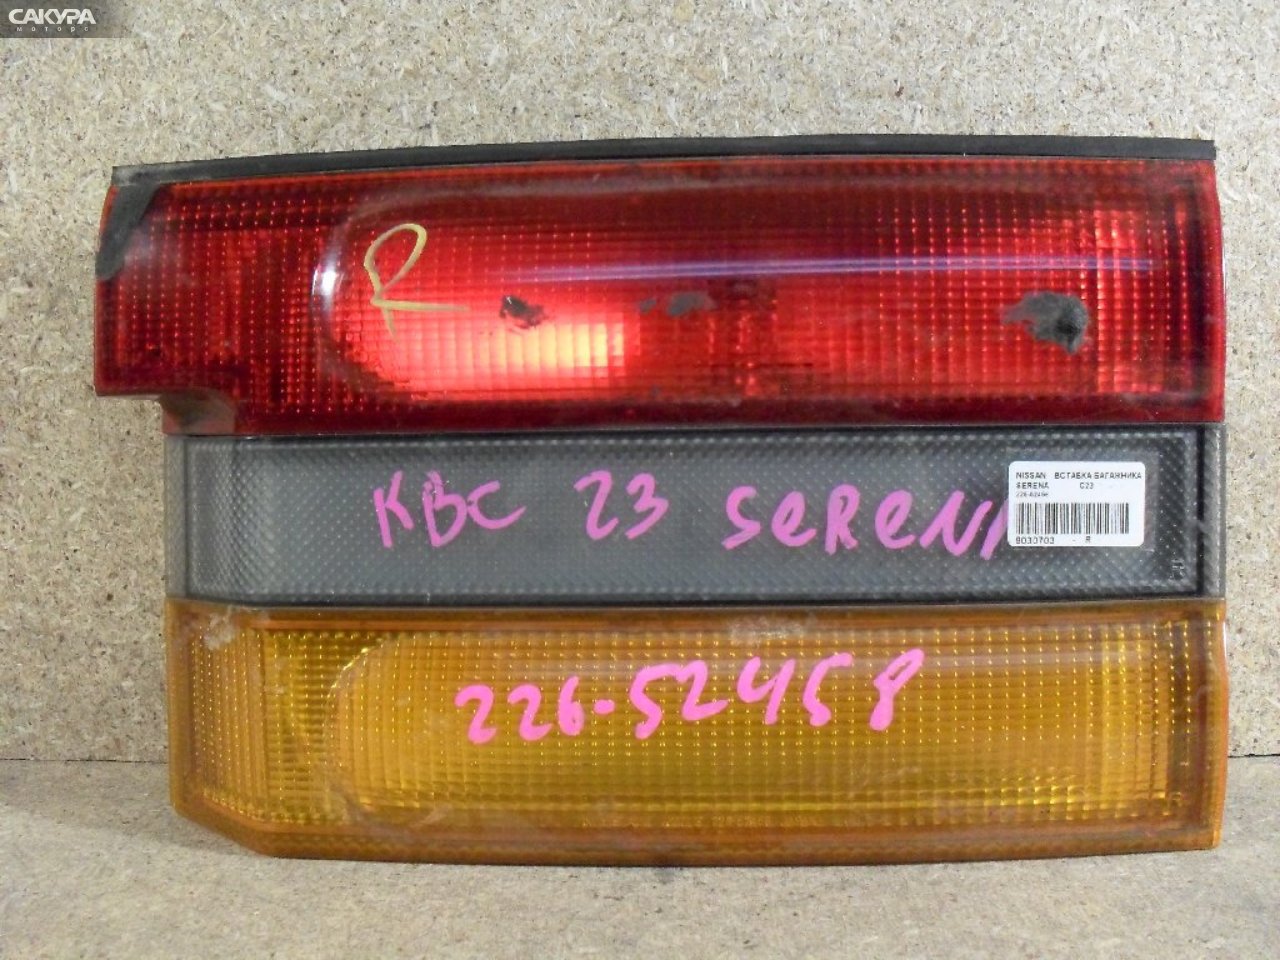 Фонарь вставка багажника правый Nissan Serena KBC23 226-52458: купить в Сакура Абакан.